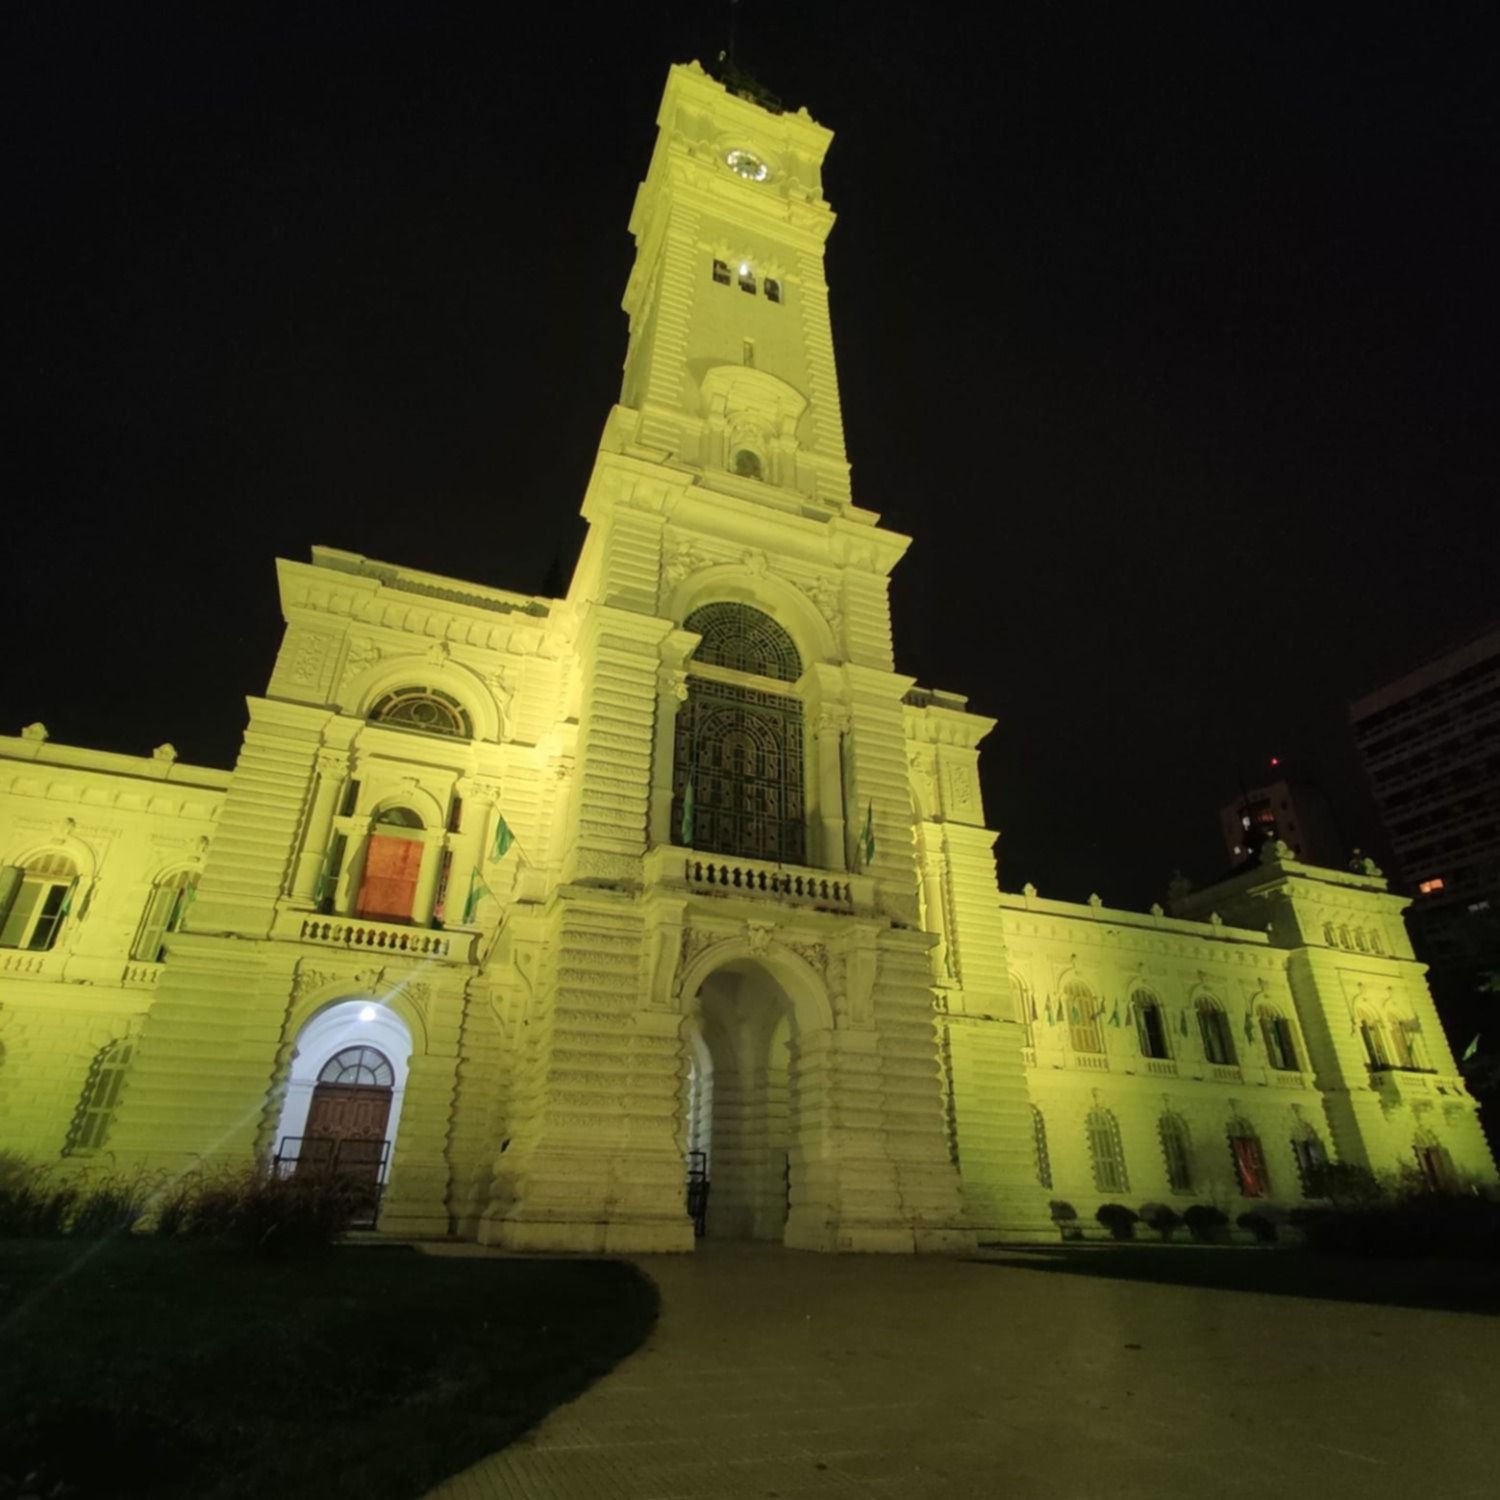 ¿Por qué la Municipalidad de La Plata se iluminó de amarillo?